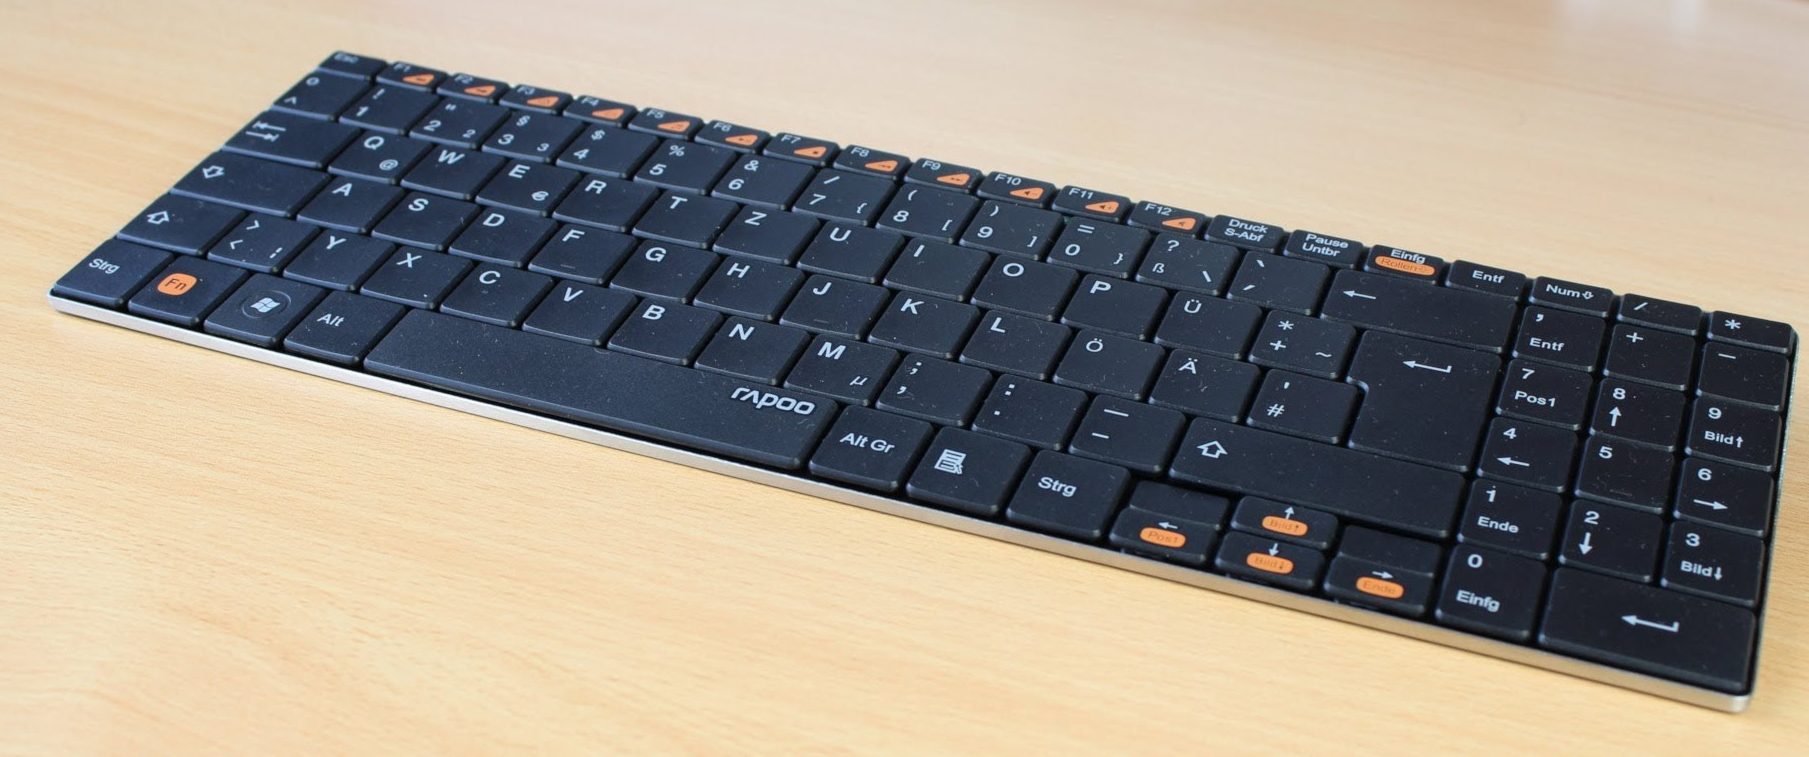 RAPOO Wireless Ultra-slim Keyboard E9070.